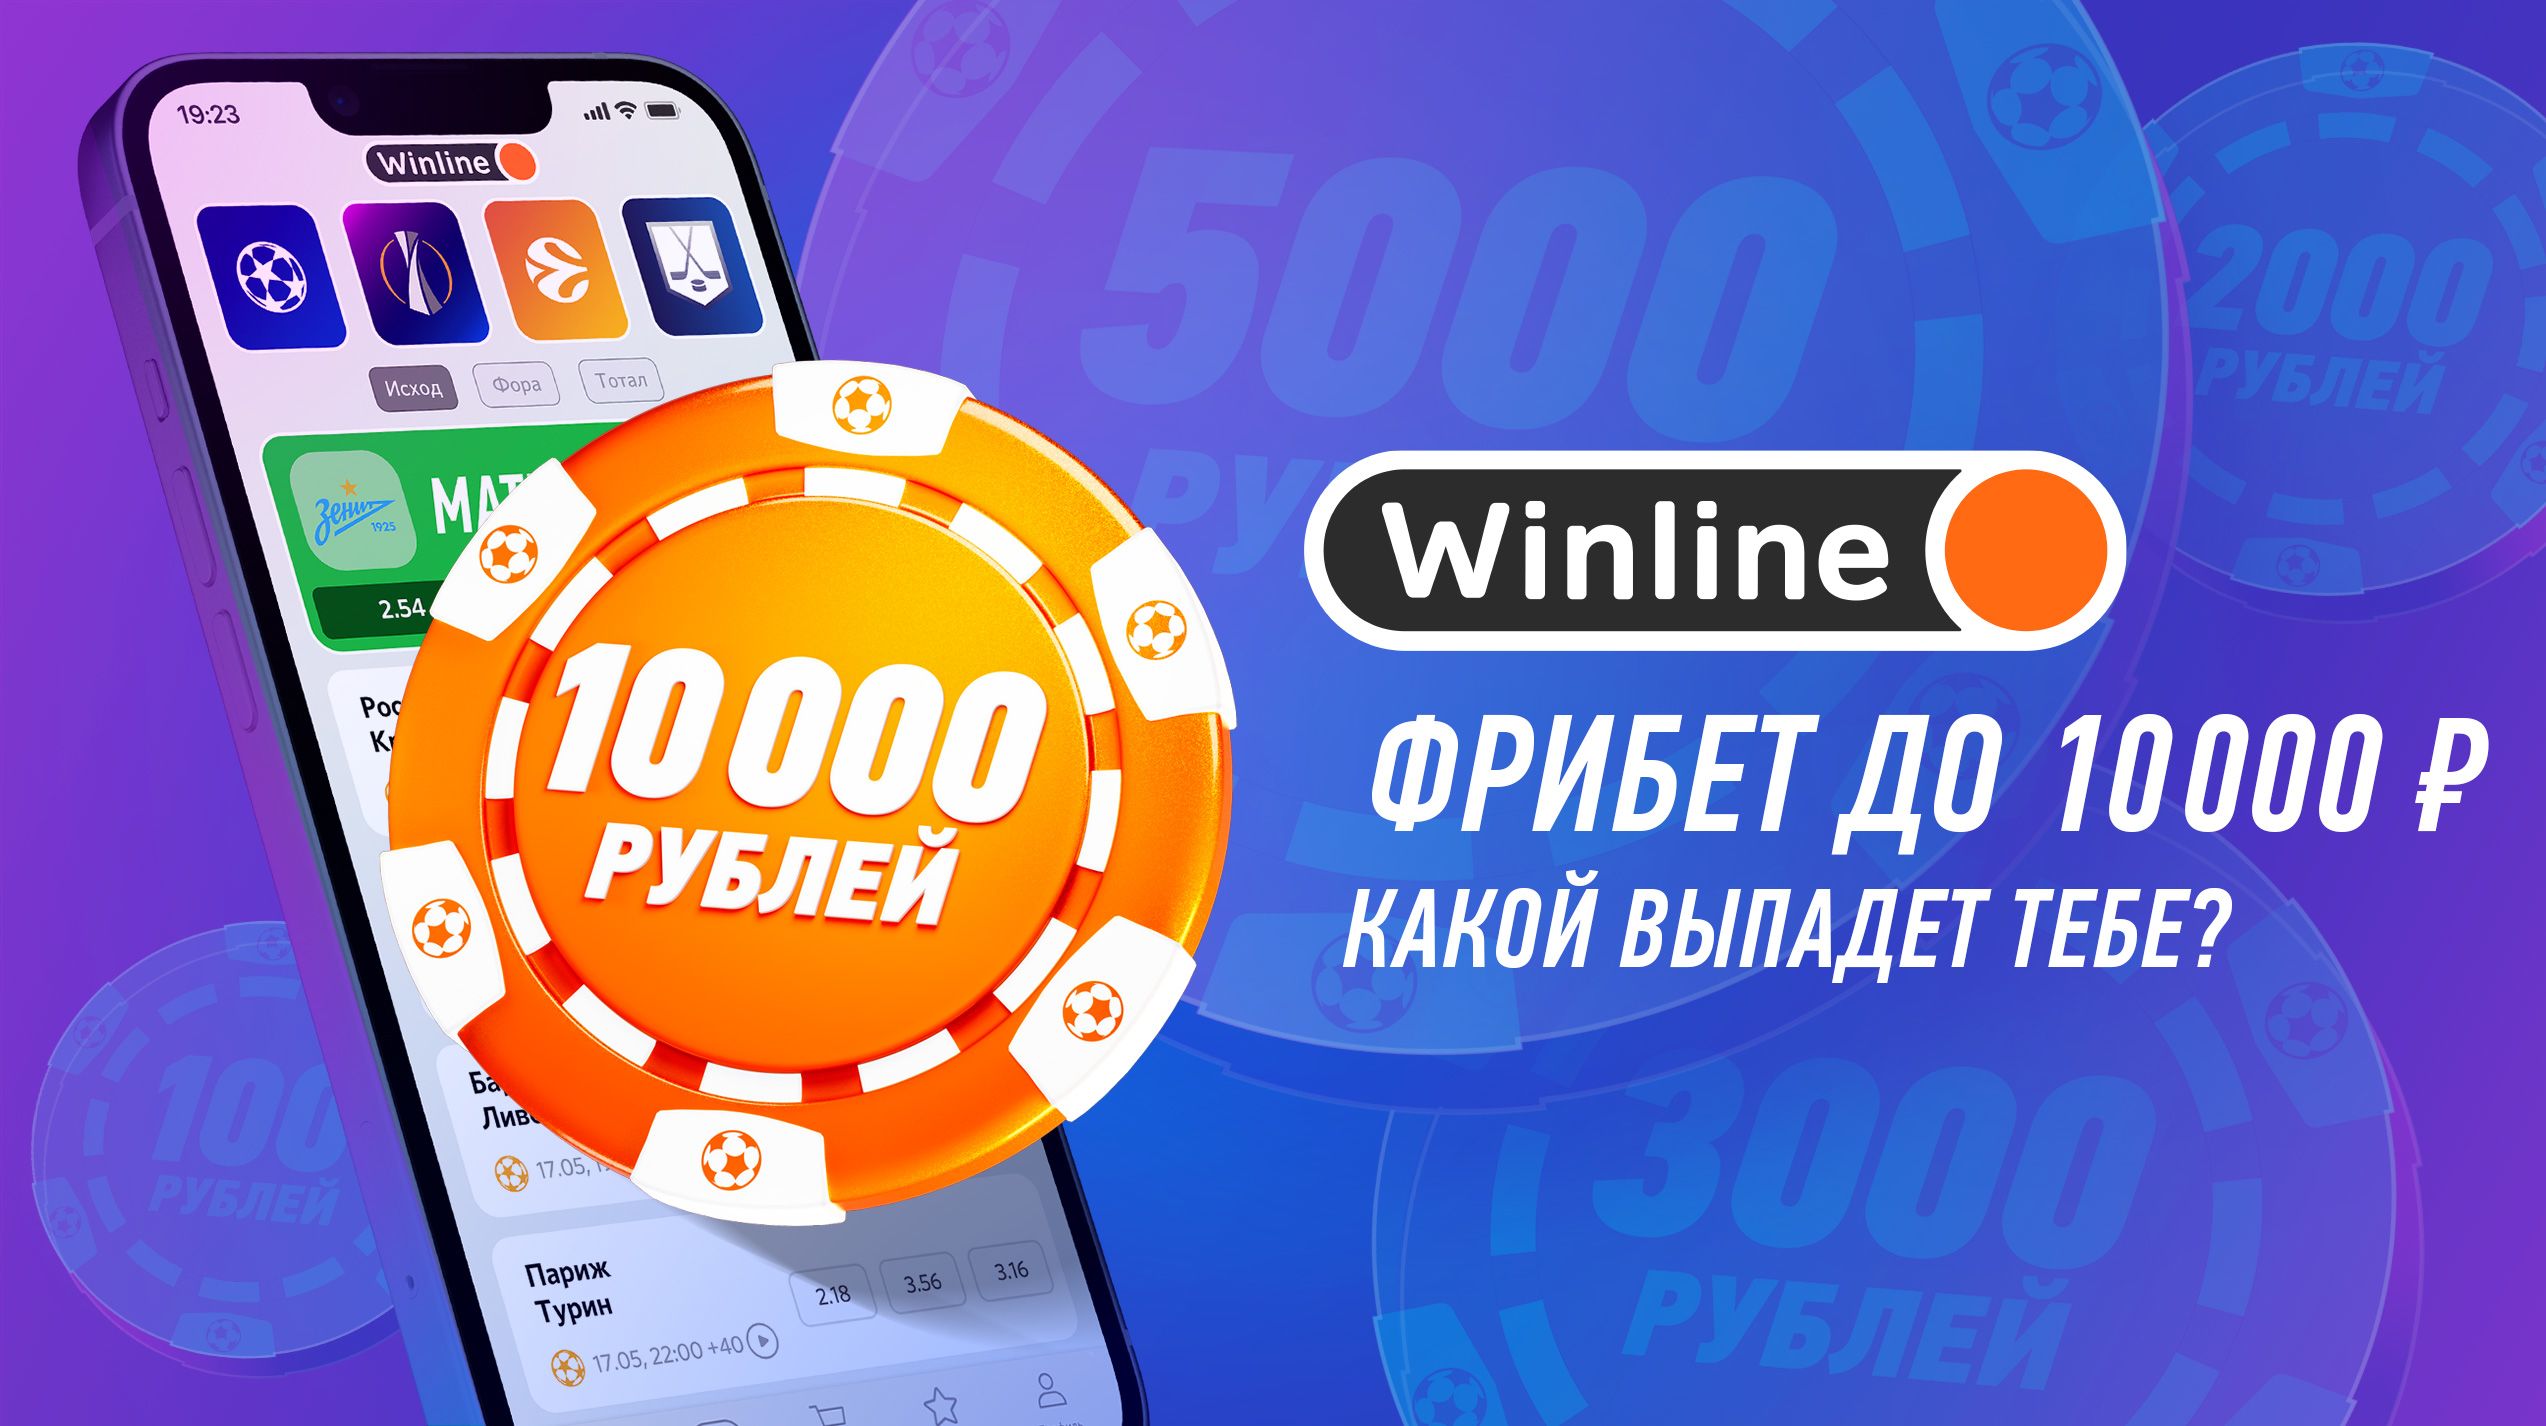 Винлайн дарит фрибет до 10000 рублей без депозита за установку приложения